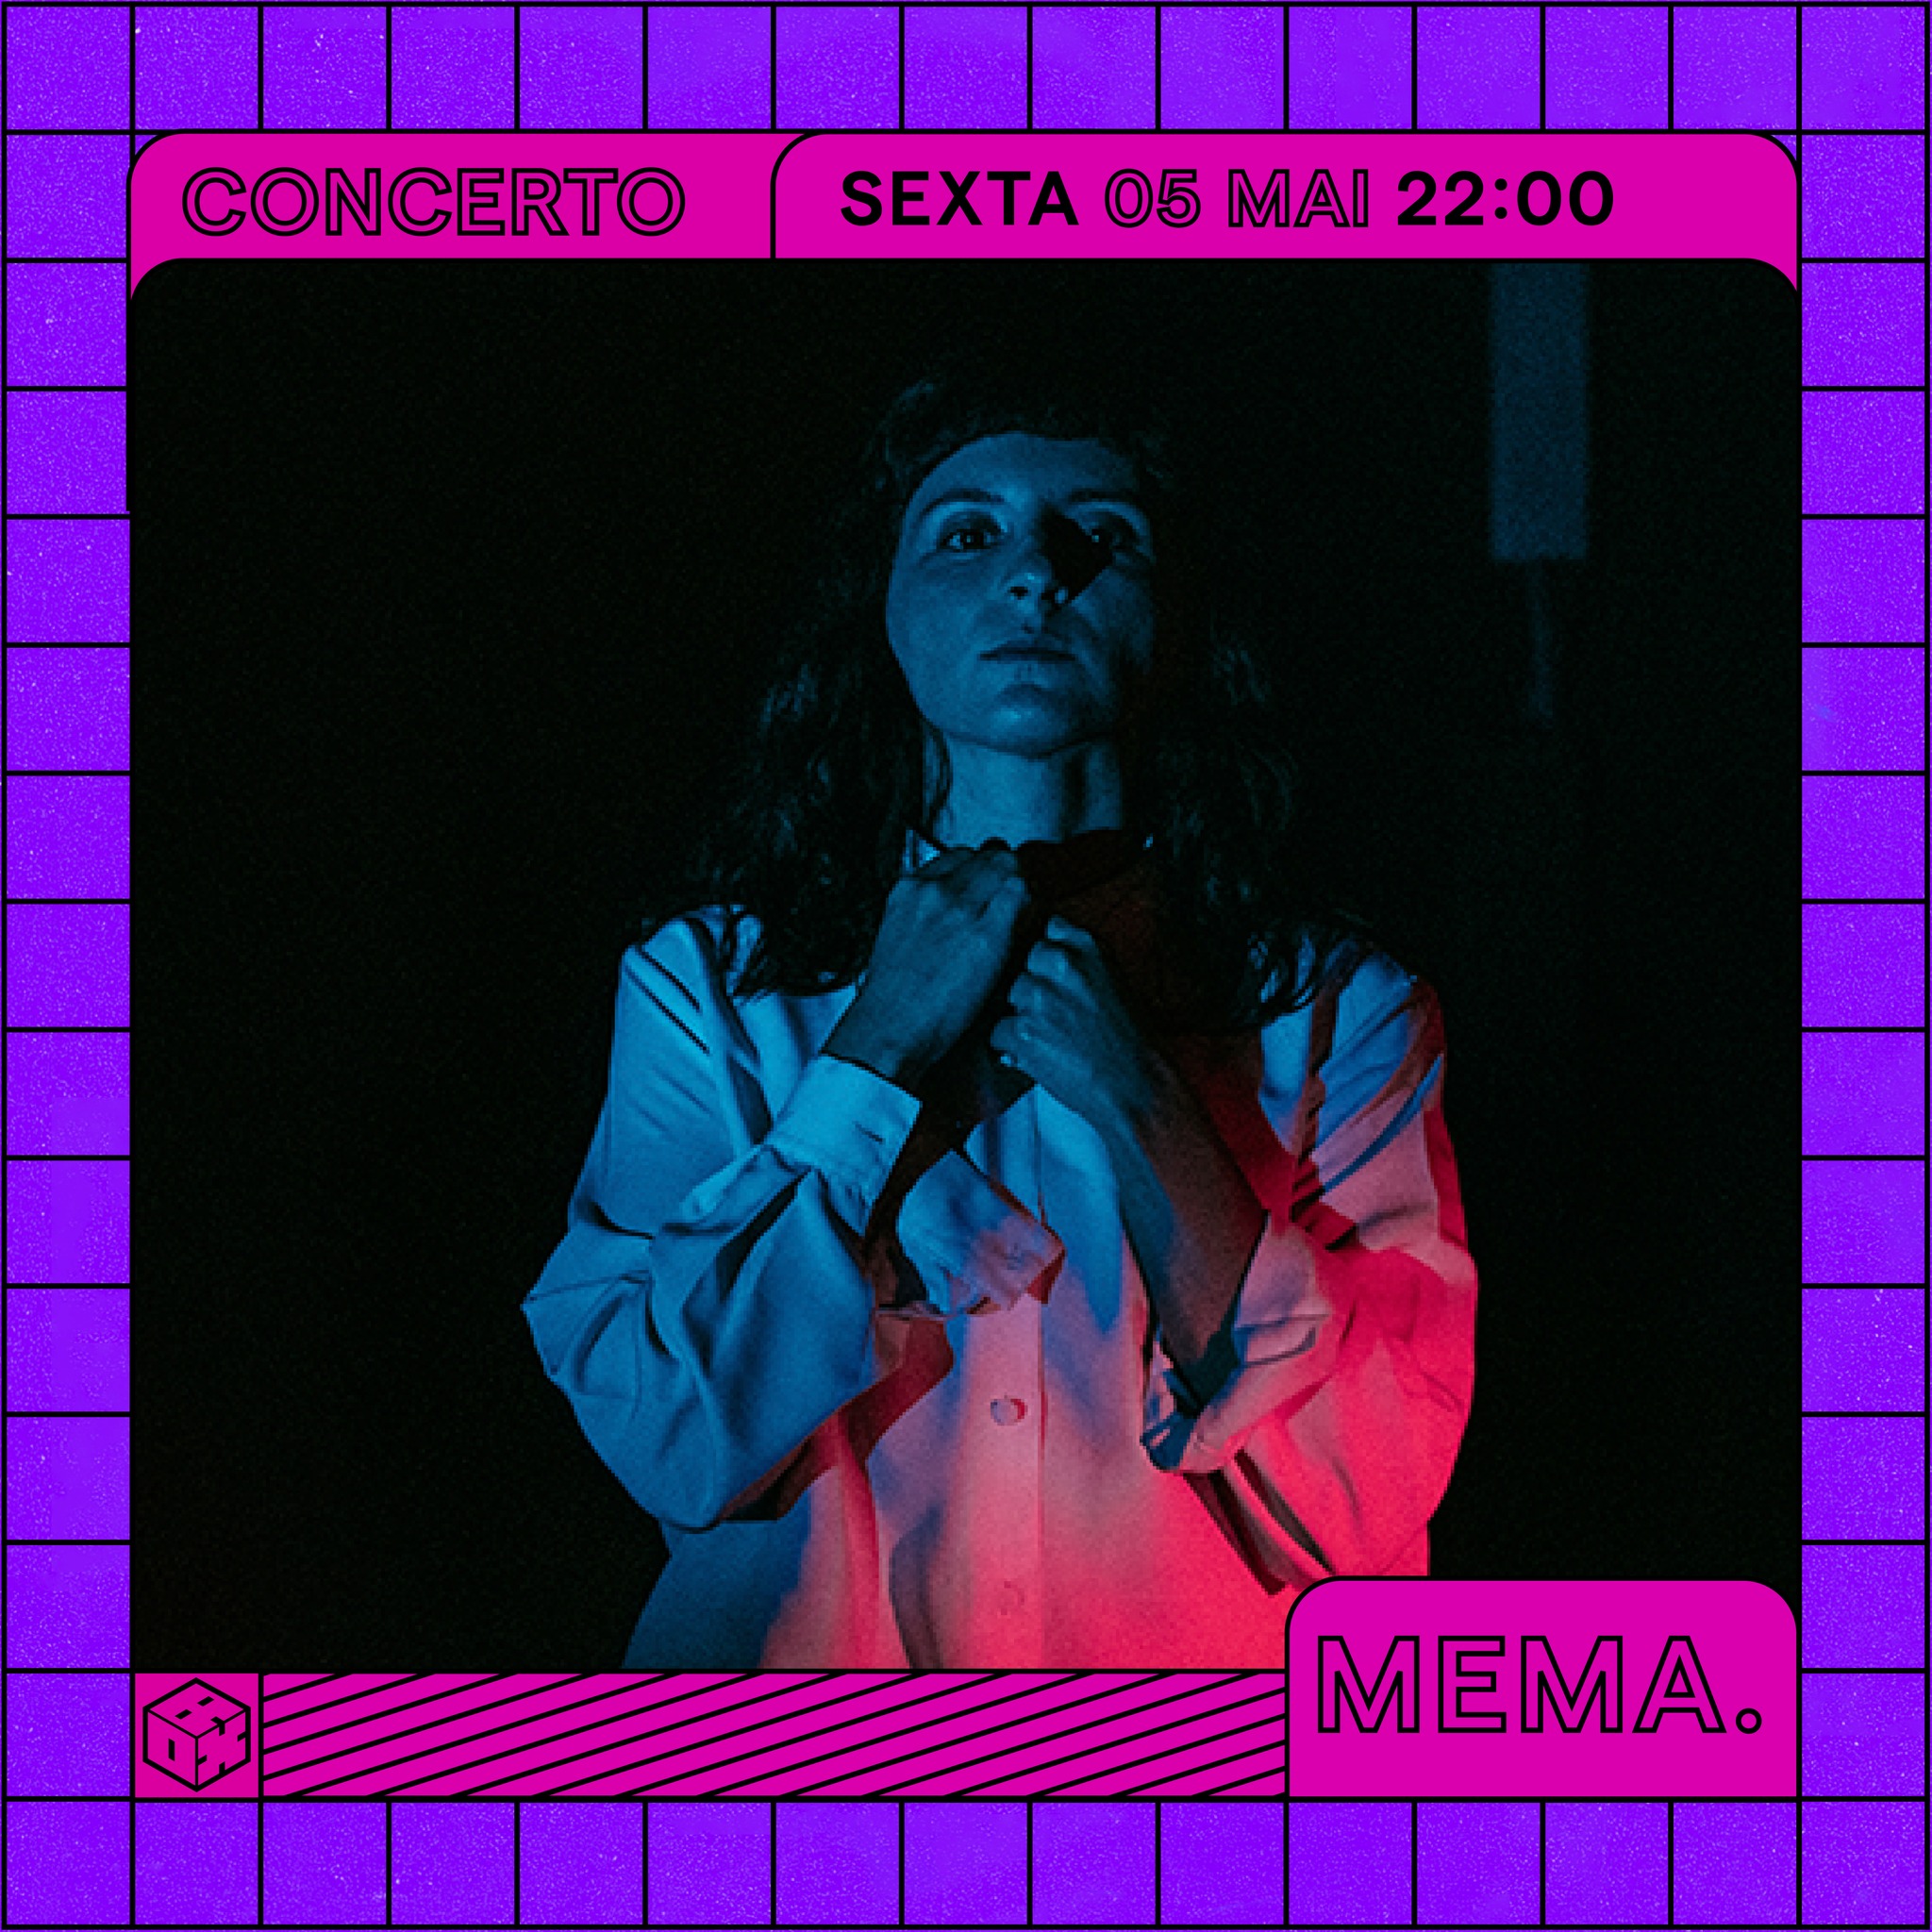 MEMA. | MusicBox